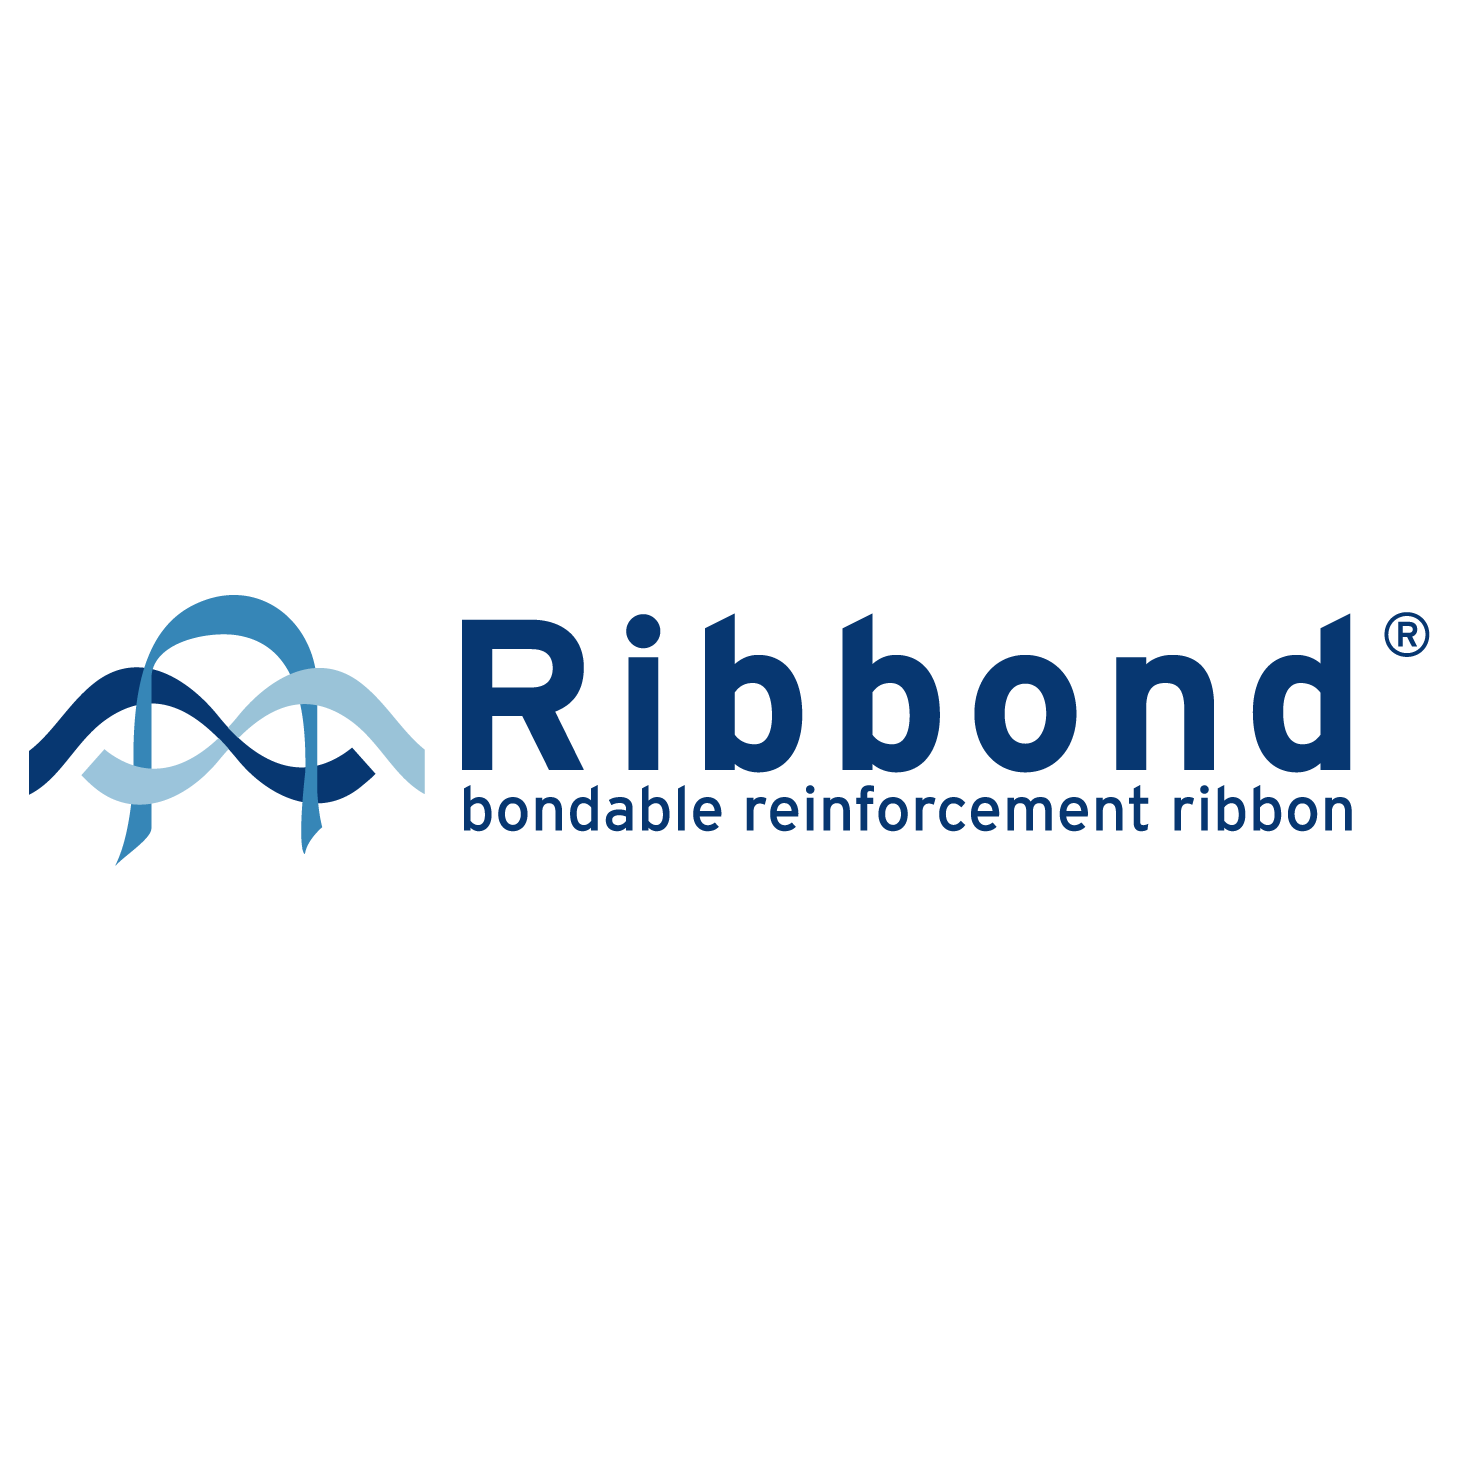 Ribbond